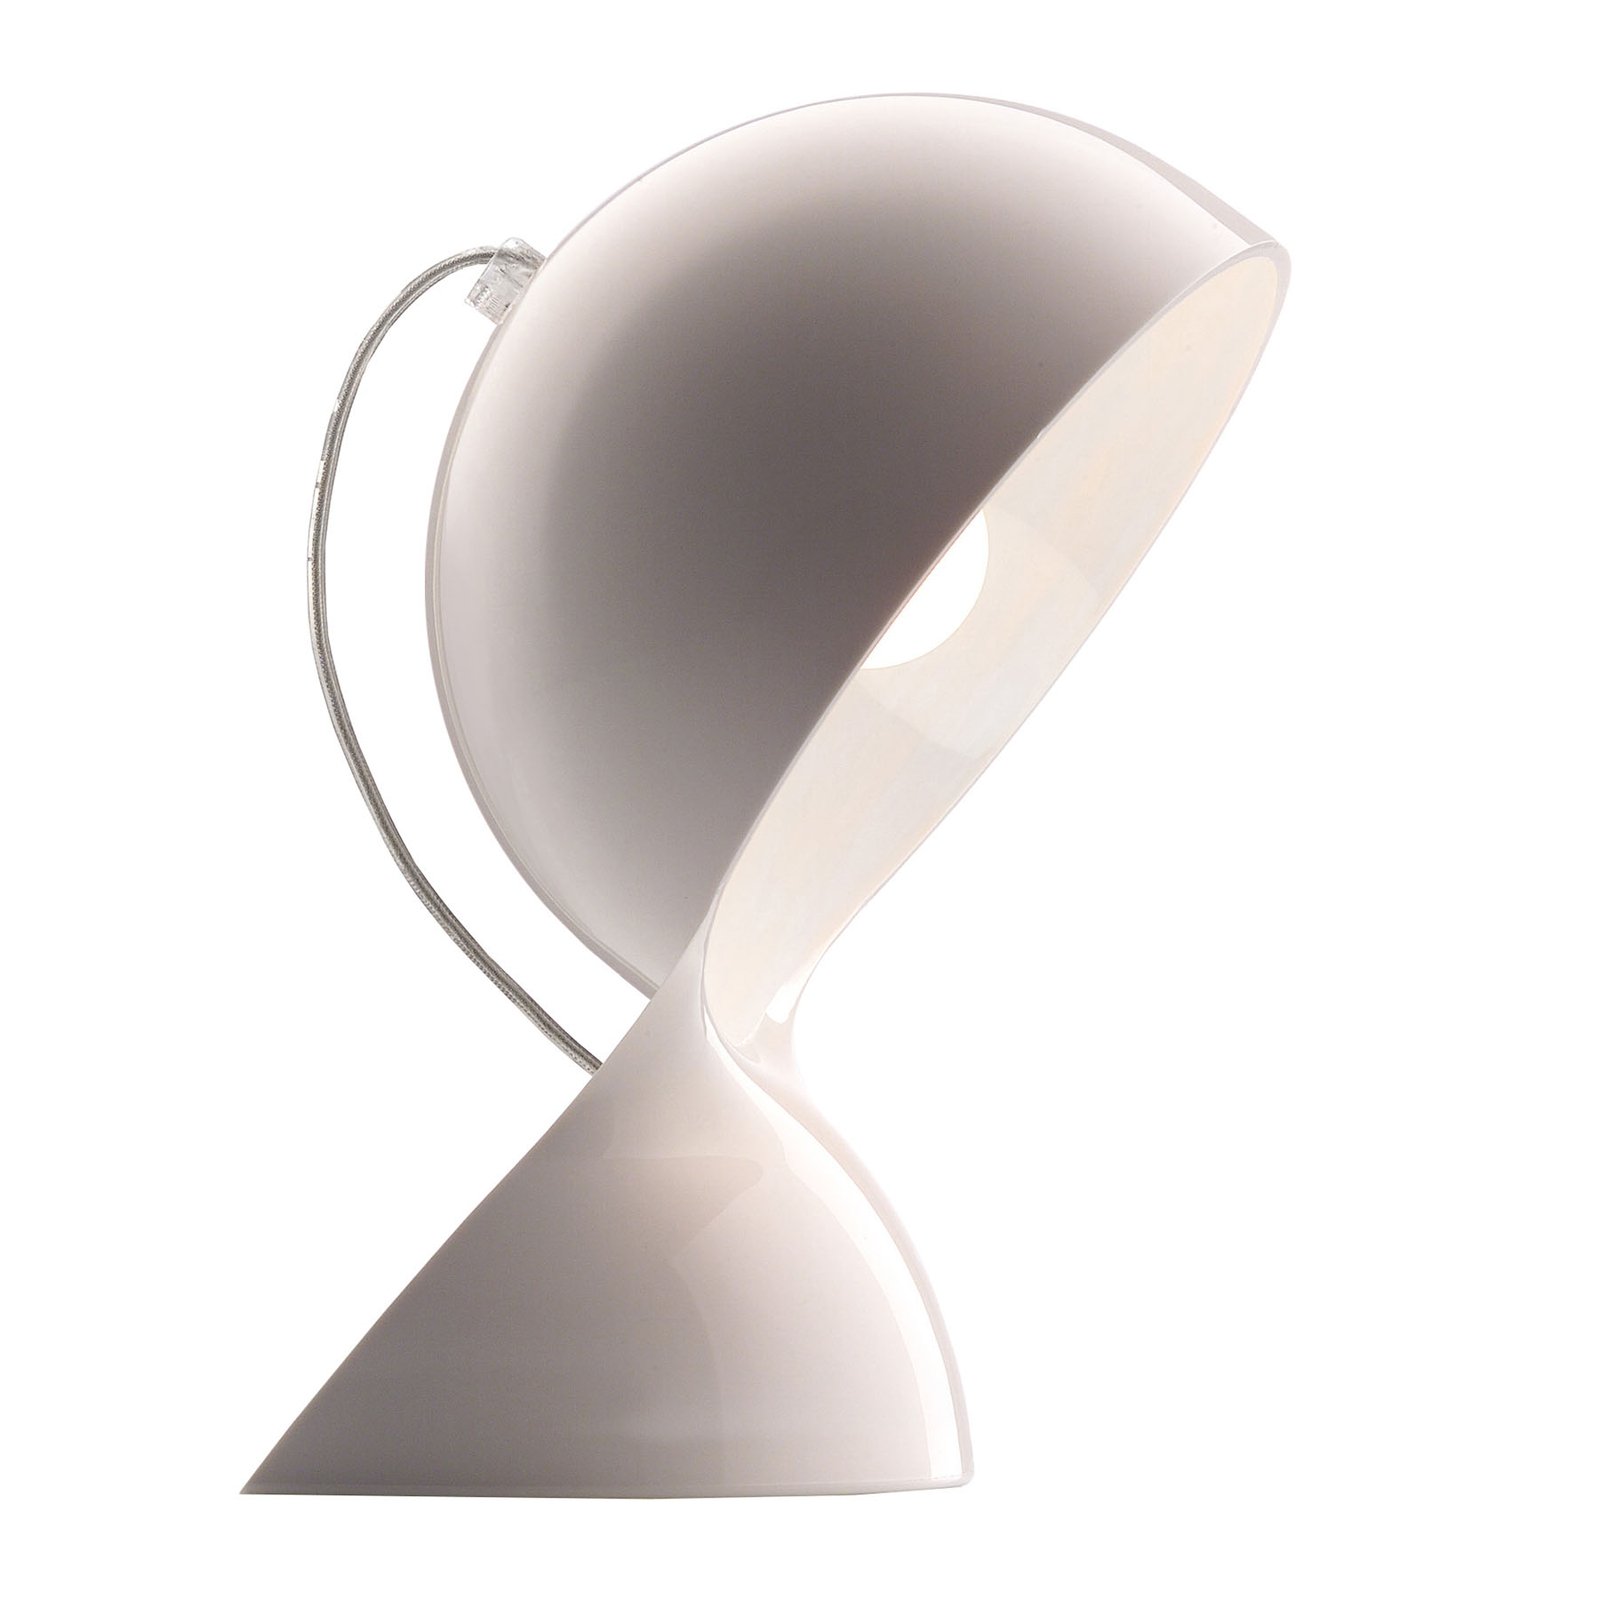 Artemide Dalù designer table lamp in white